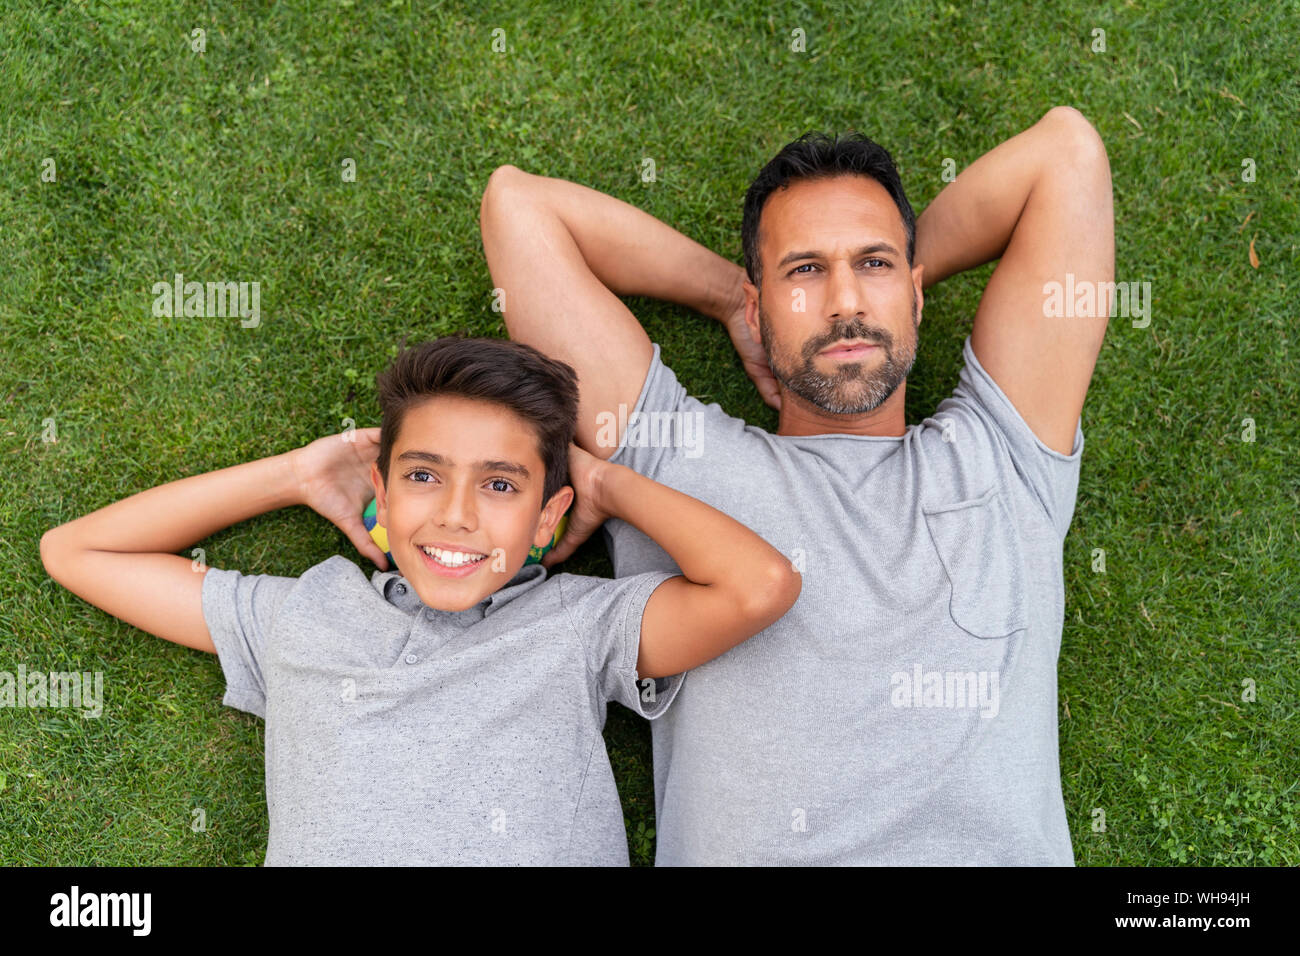 Vater und Sohn zusammen im Gras liegend Stockfoto